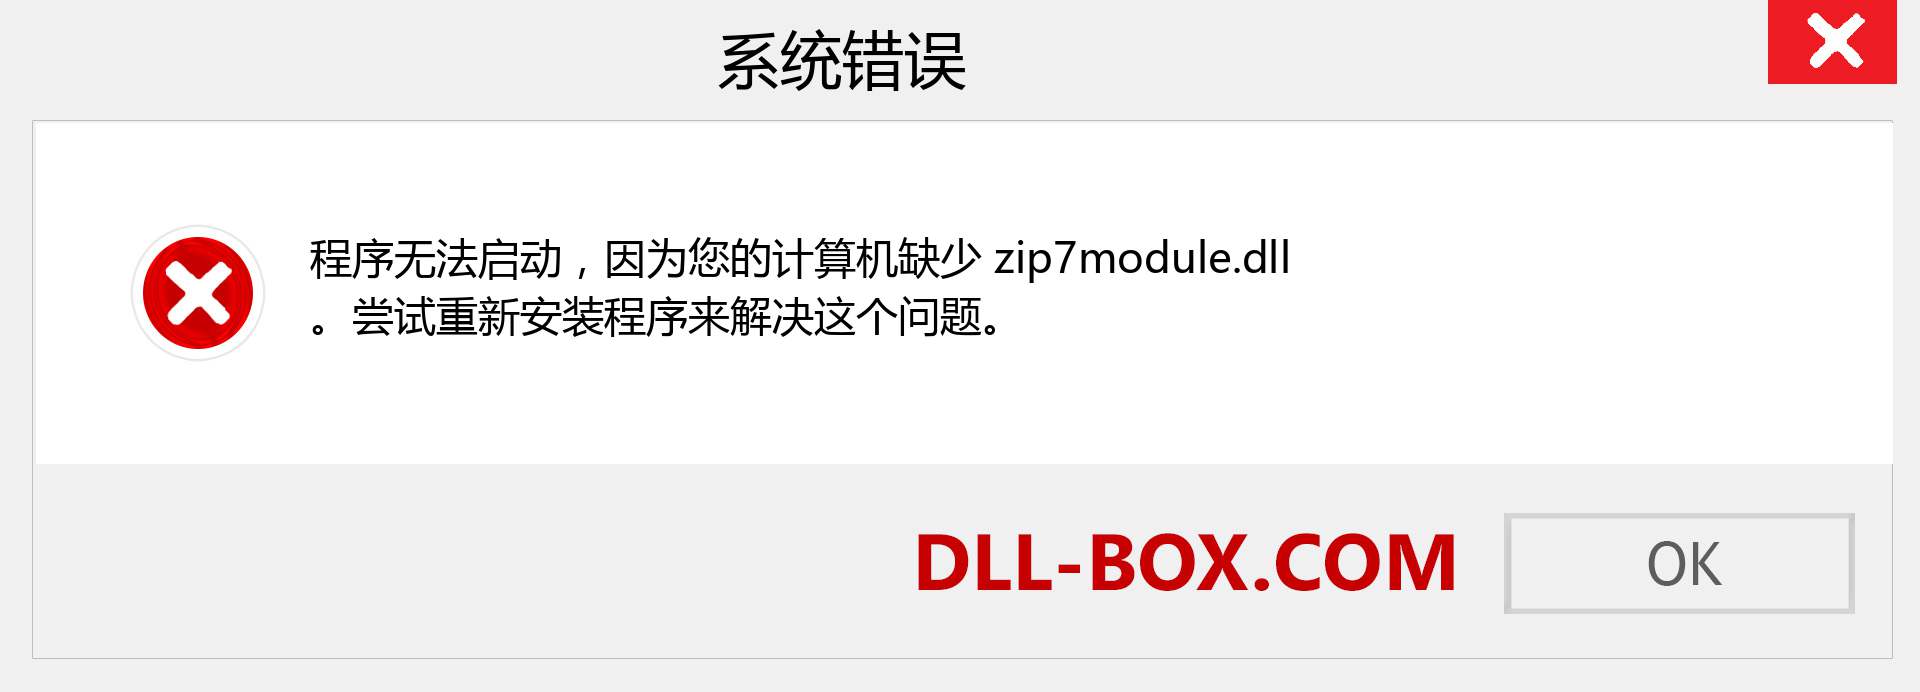 zip7module.dll 文件丢失？。 适用于 Windows 7、8、10 的下载 - 修复 Windows、照片、图像上的 zip7module dll 丢失错误